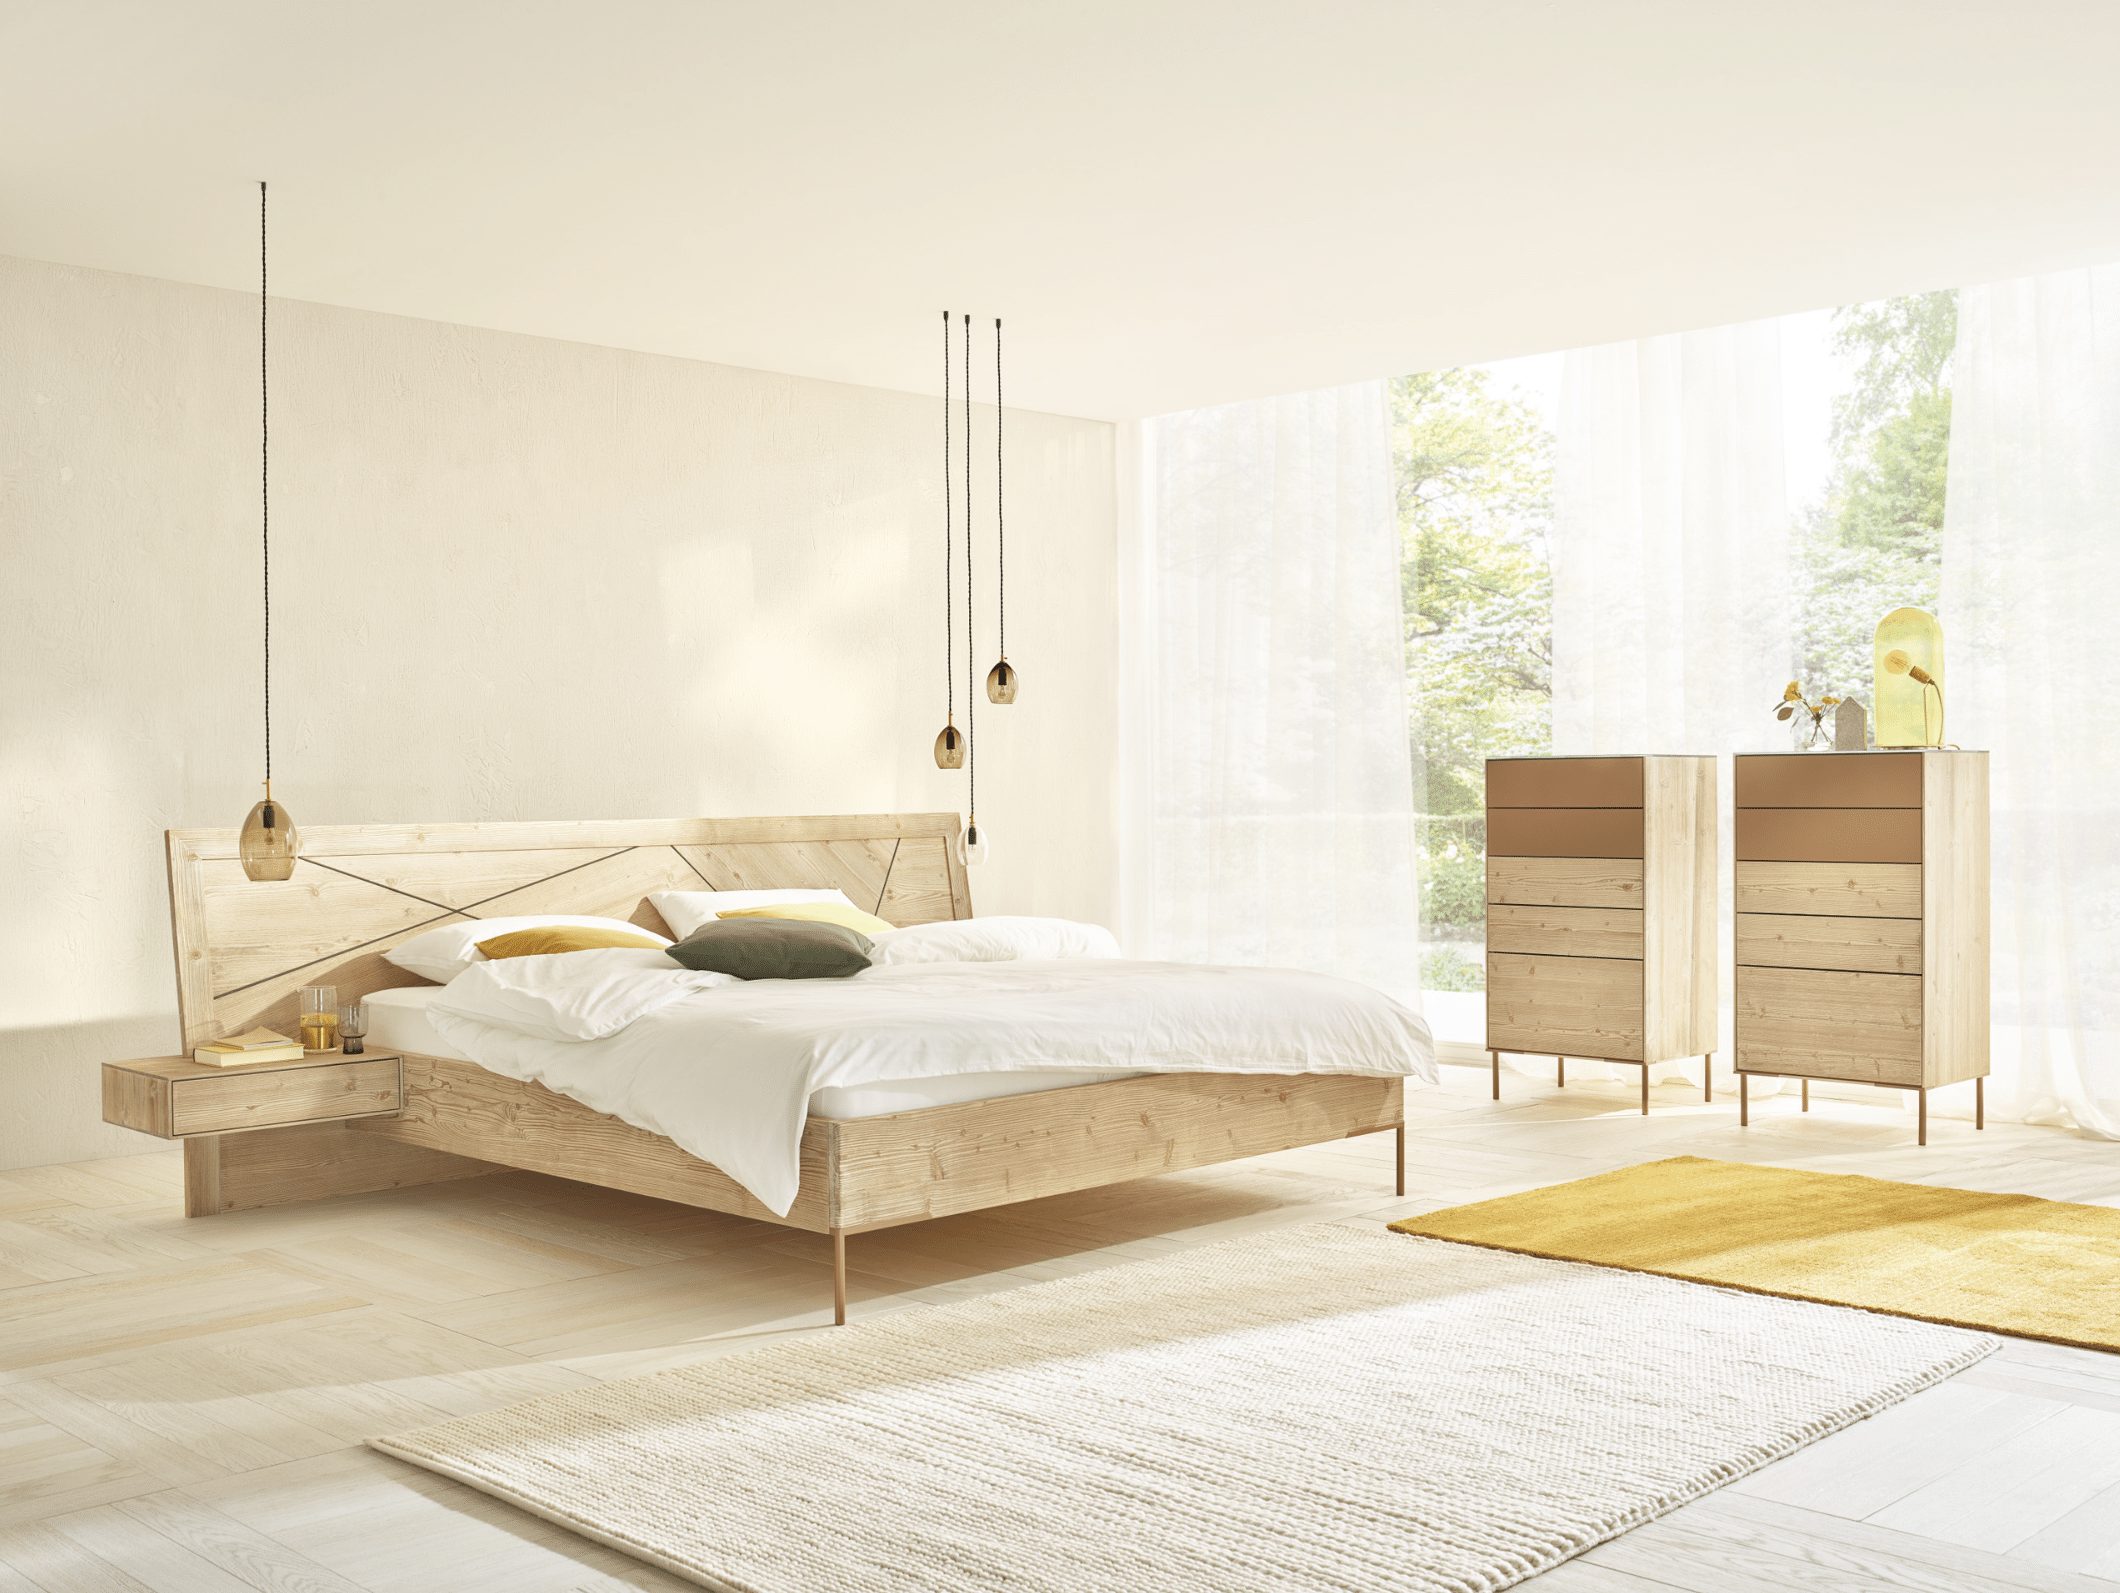 WOHNHAUS Grill & Ronacher zeigt ein modernes Schlafzimmer mit einem Doppelbett aus dem Holz der Bergfichte und dazupassenden Kommoden und freiliegendem Teppich.